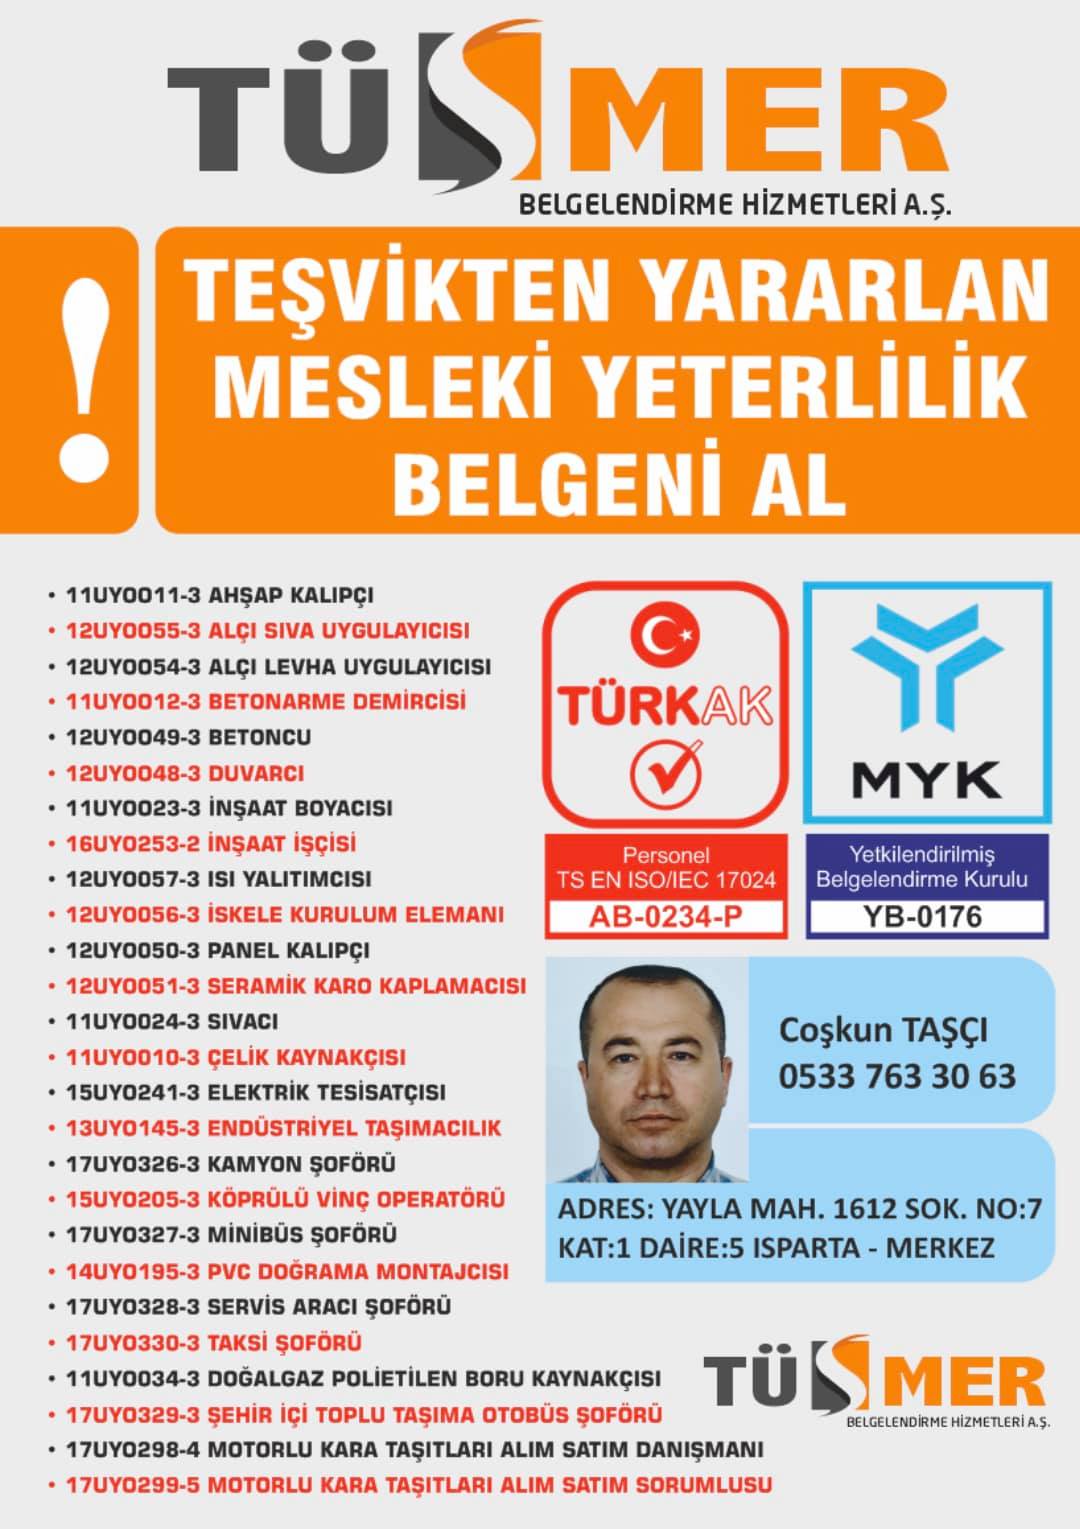 MYK MESLEKİ YETERLİLİK BELGESİ Fındıklı Maltepe İstanbul